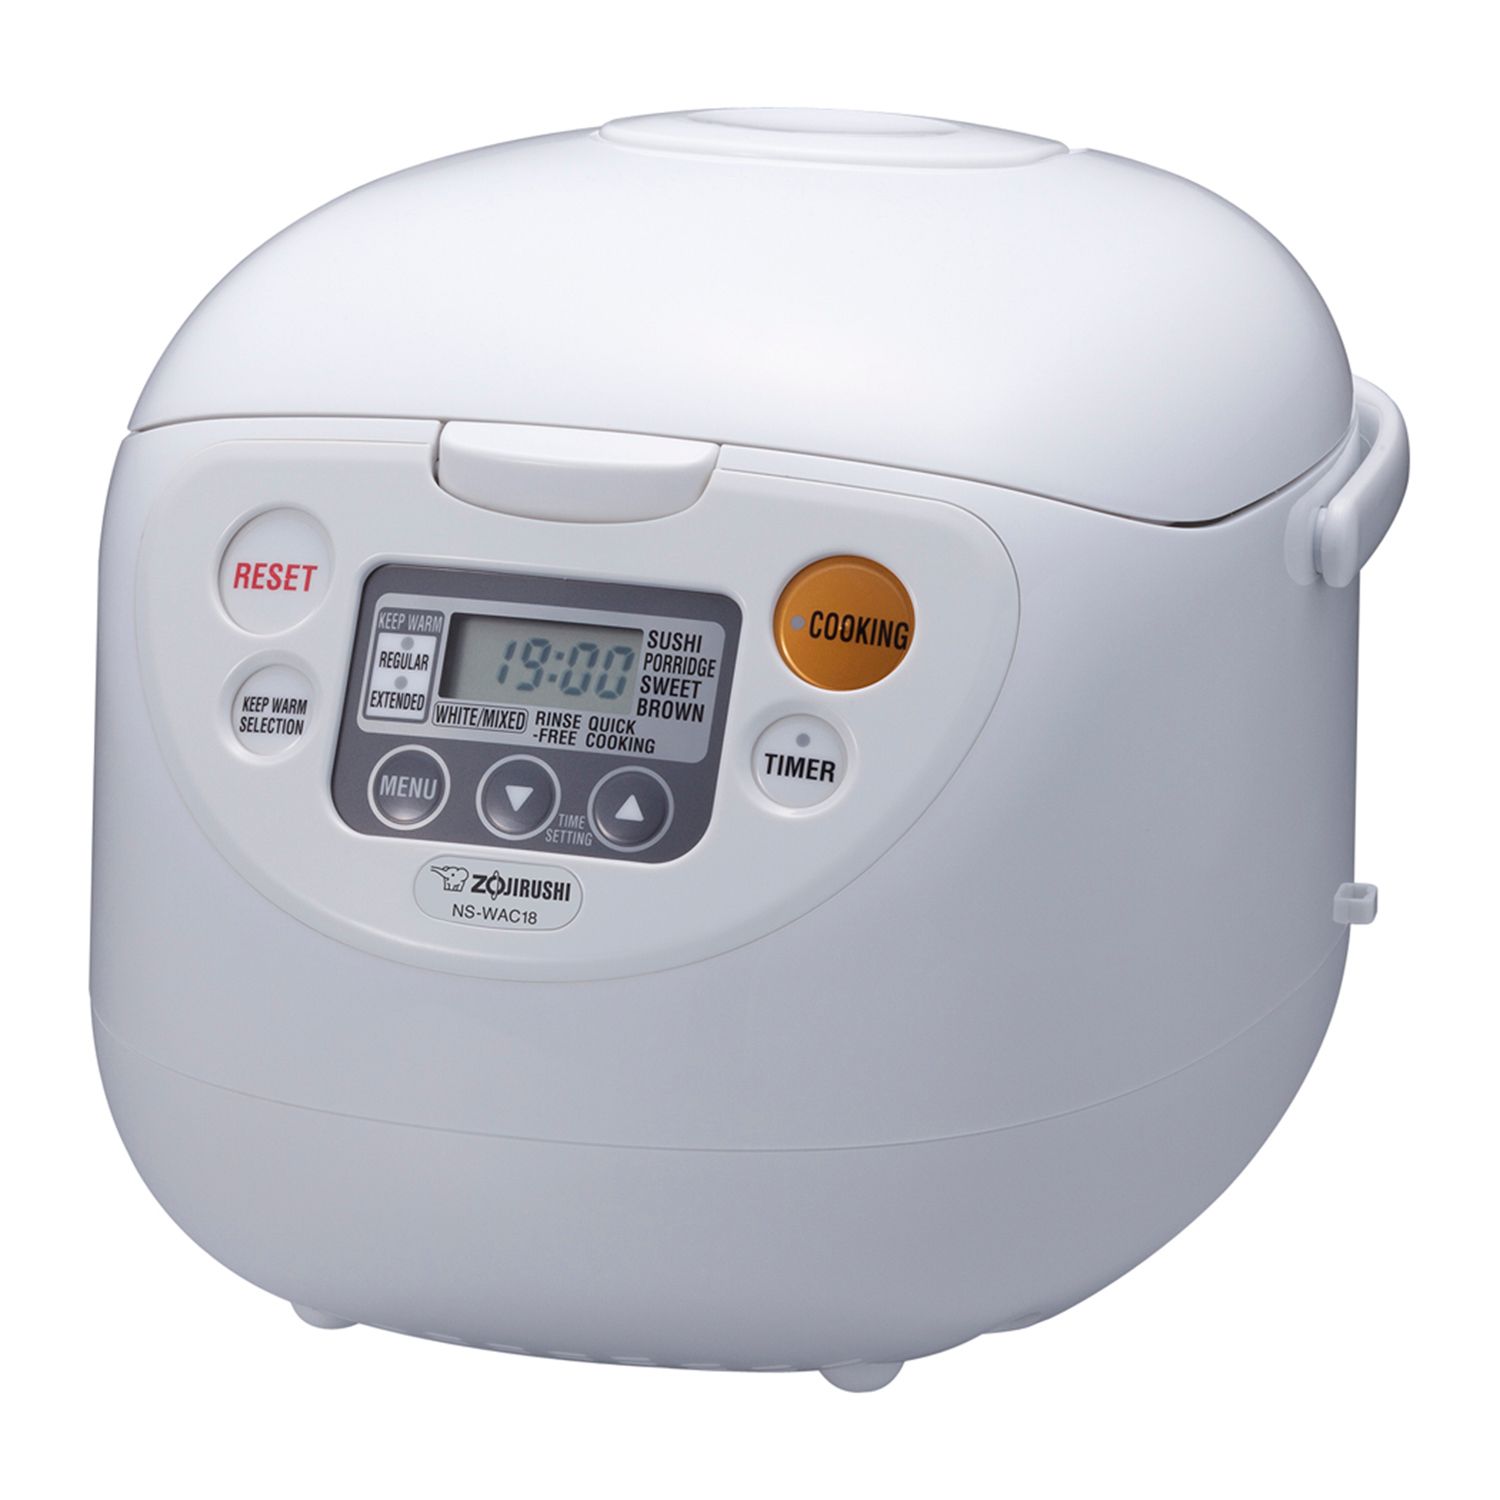 Dash Mini 16-oz. 2-Cup Rice Cooker in Aqua with Keep Warm Setting